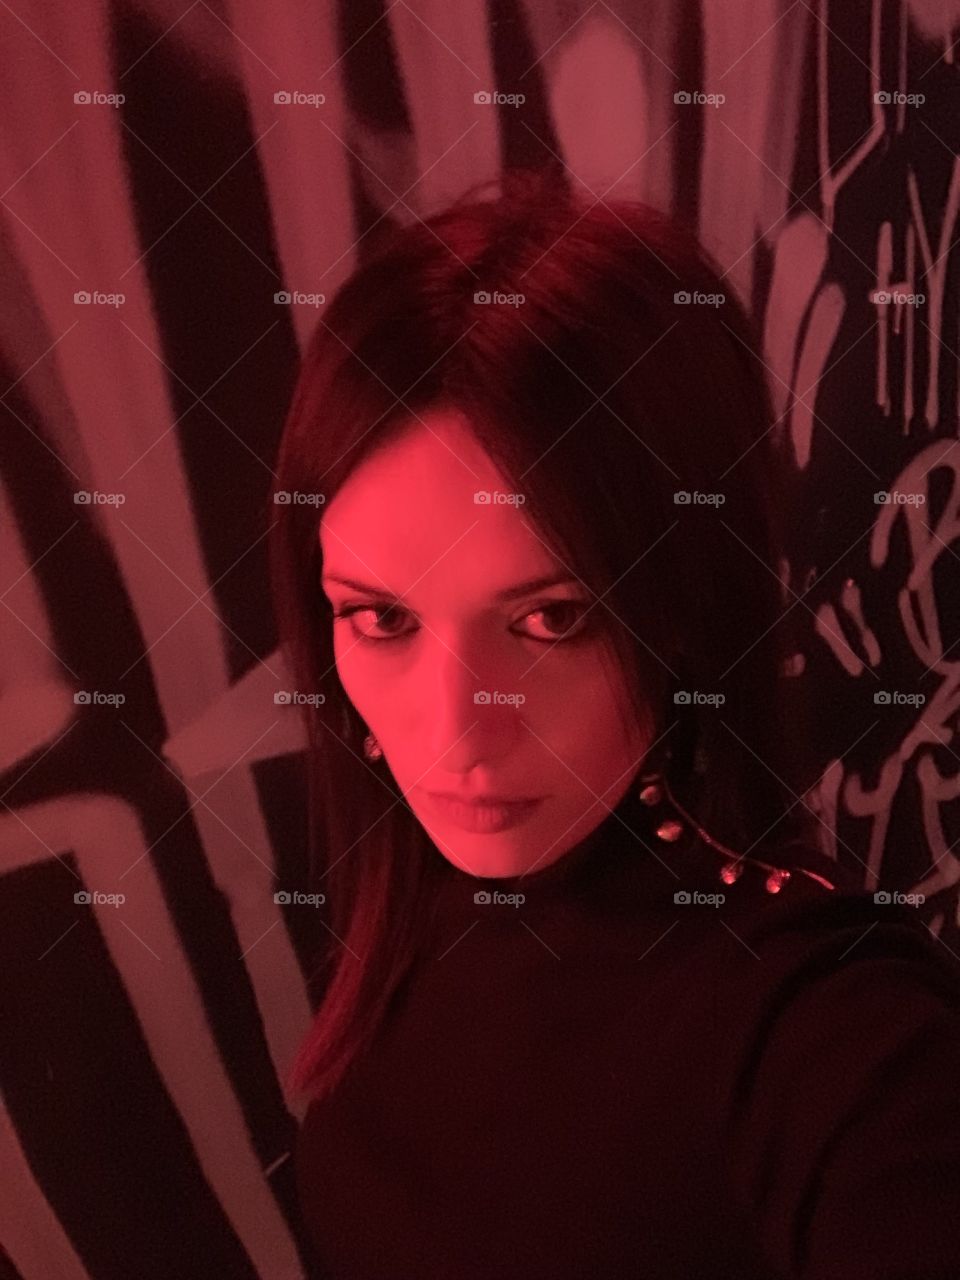 Selfie in a red room 